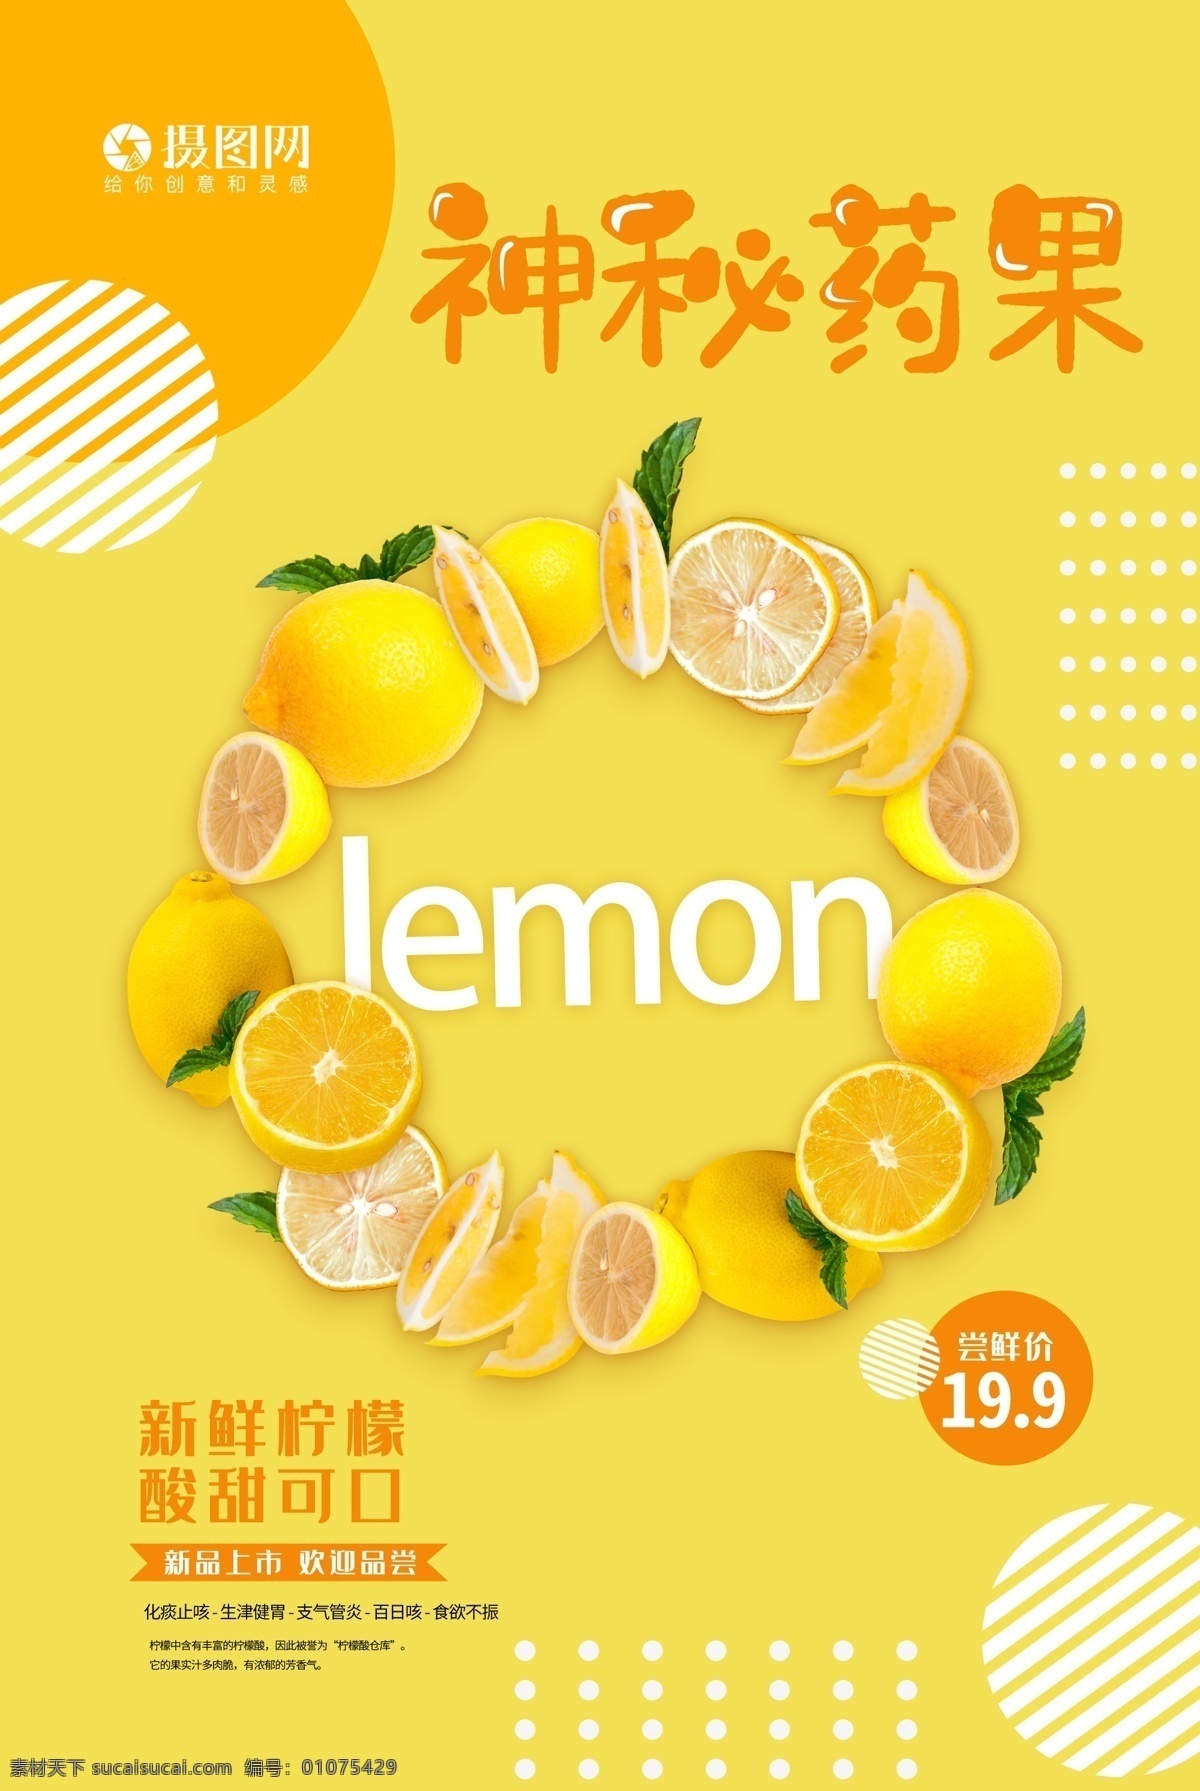 水果 系列 海报 神秘 药 果 柠檬 卡通 小清新 唯美 春季 夏季 当季 时令 促销 新鲜水果 创意